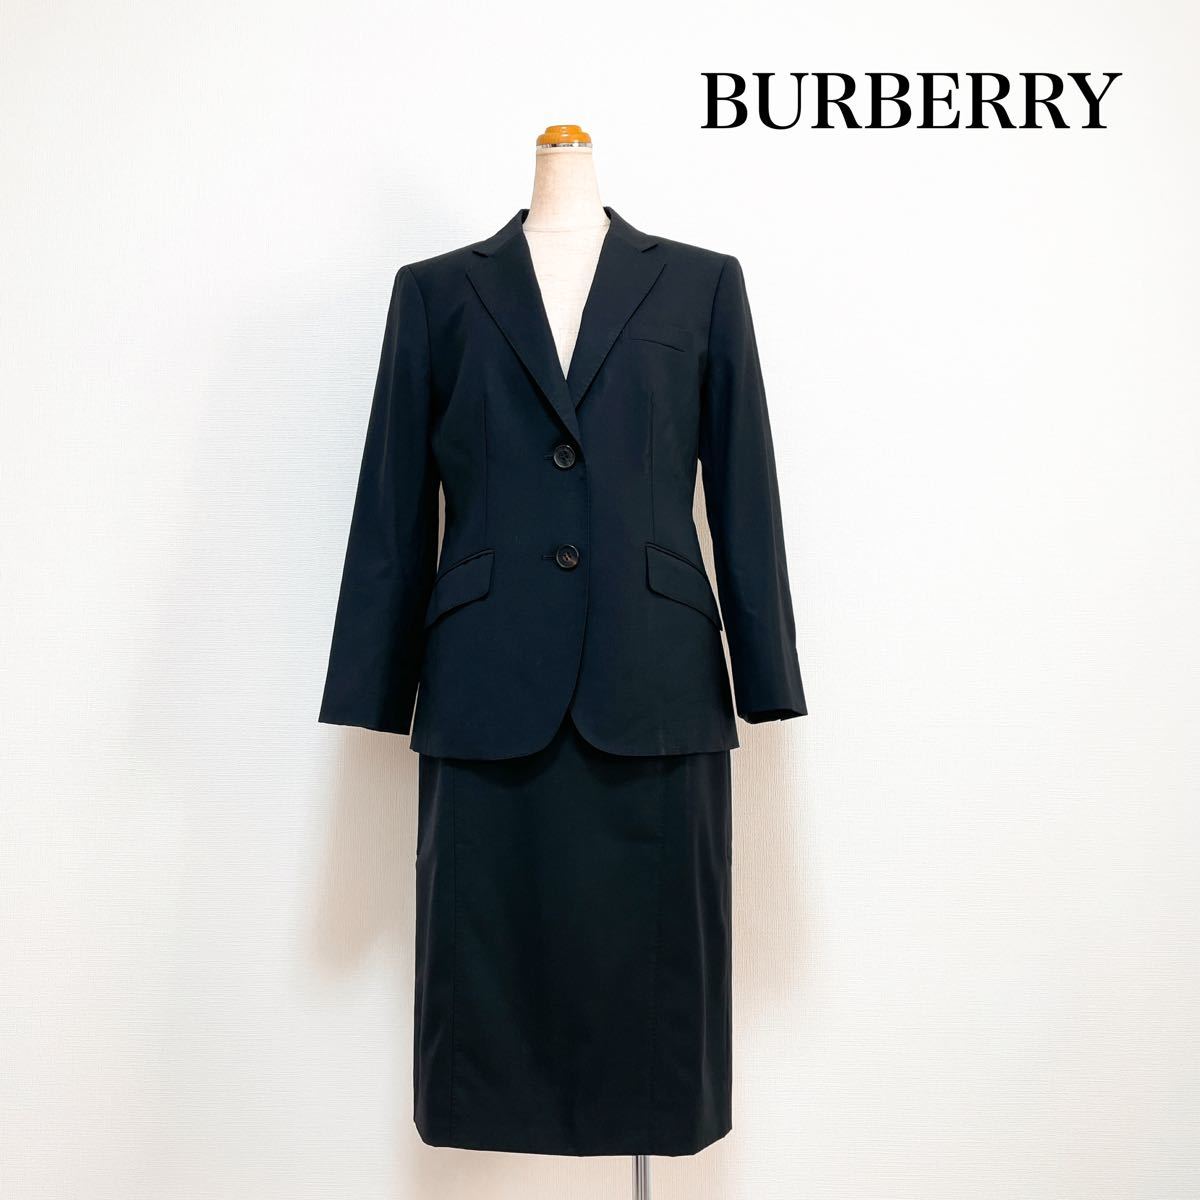 13230円 当店オススメ BURBERRY LONDON スカートスーツ 黒 大きい